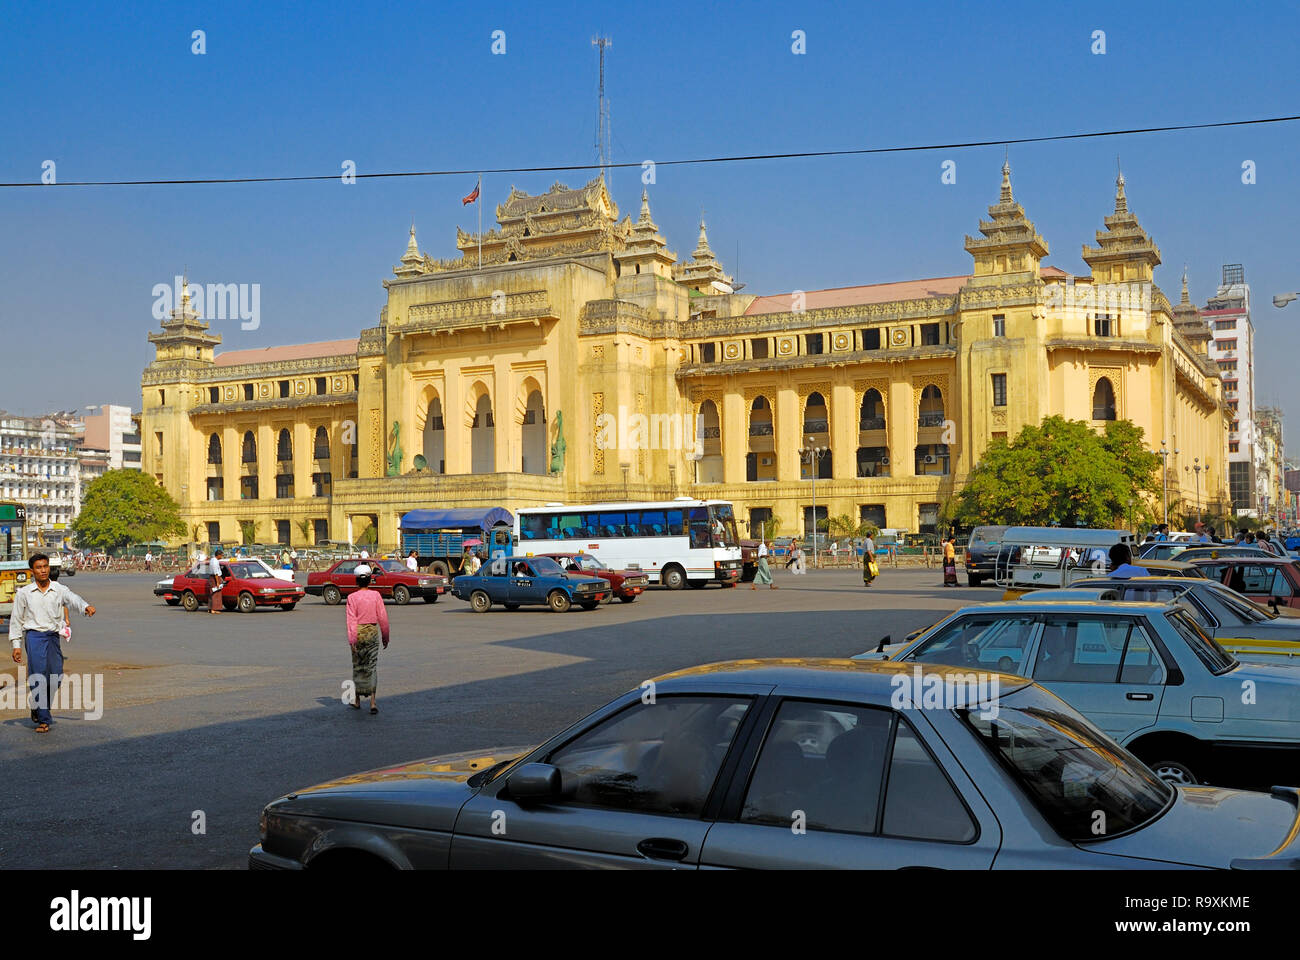 City hall of Yangon, Myanmar, Burma Stock Photo